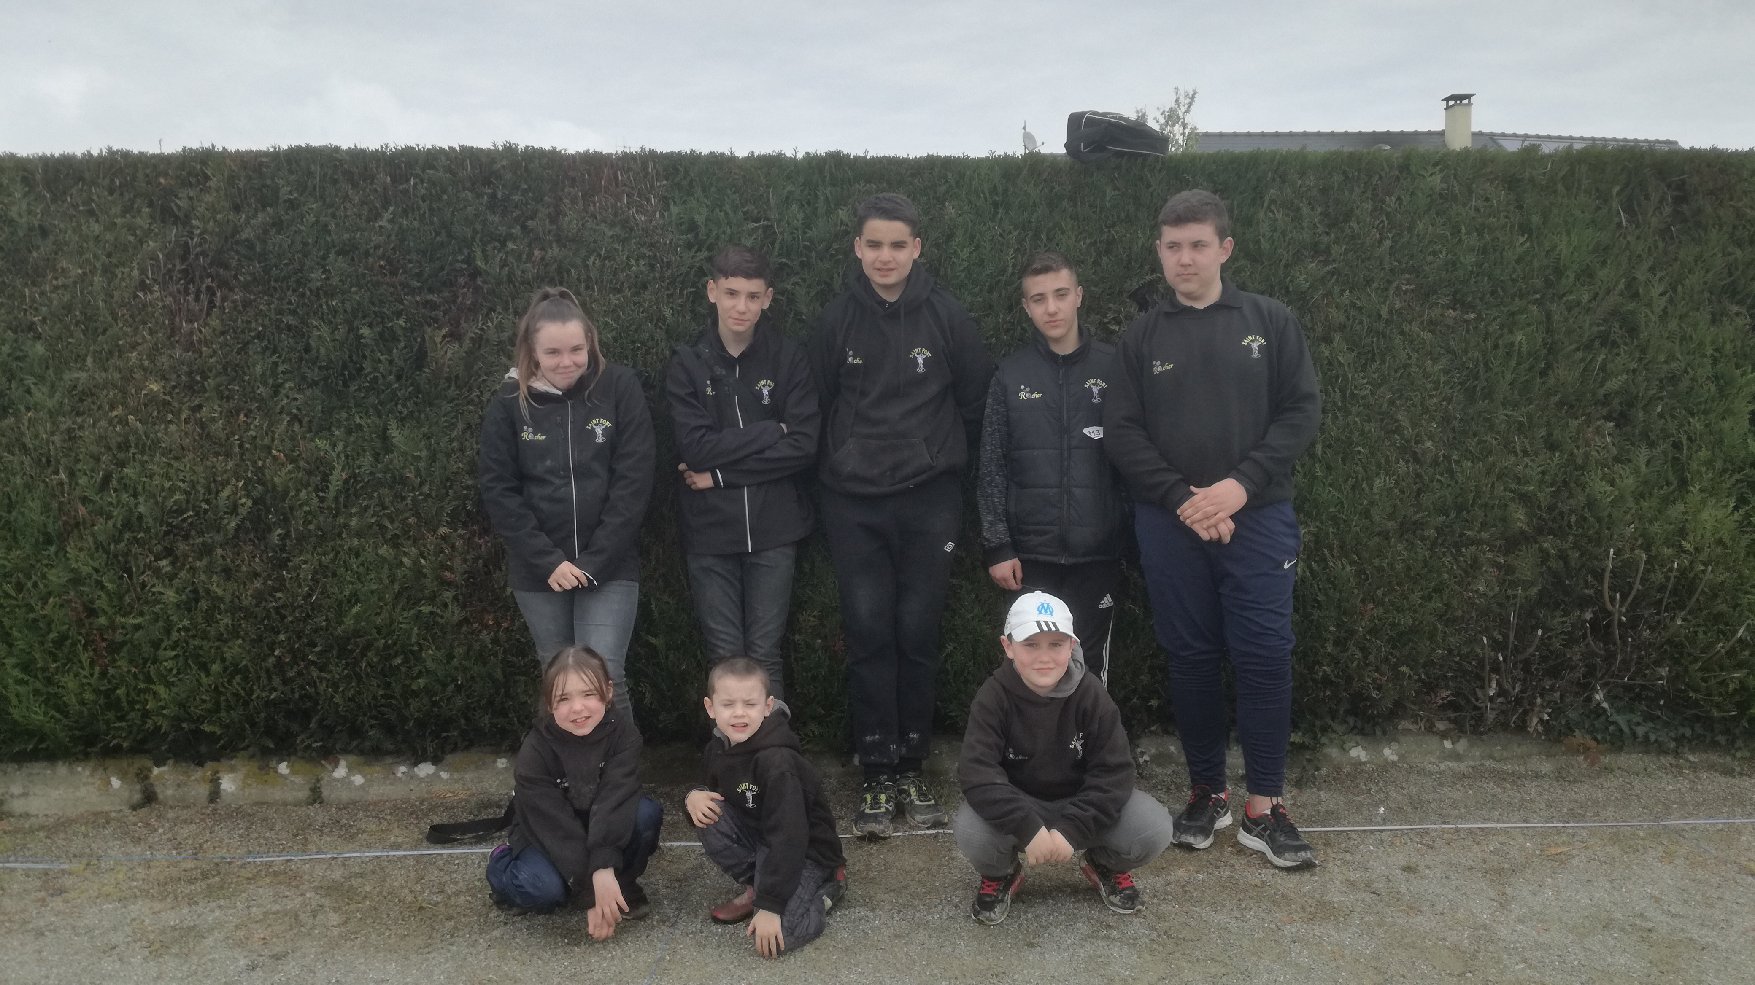 championnat de la Mayenne doublette mixte 2018